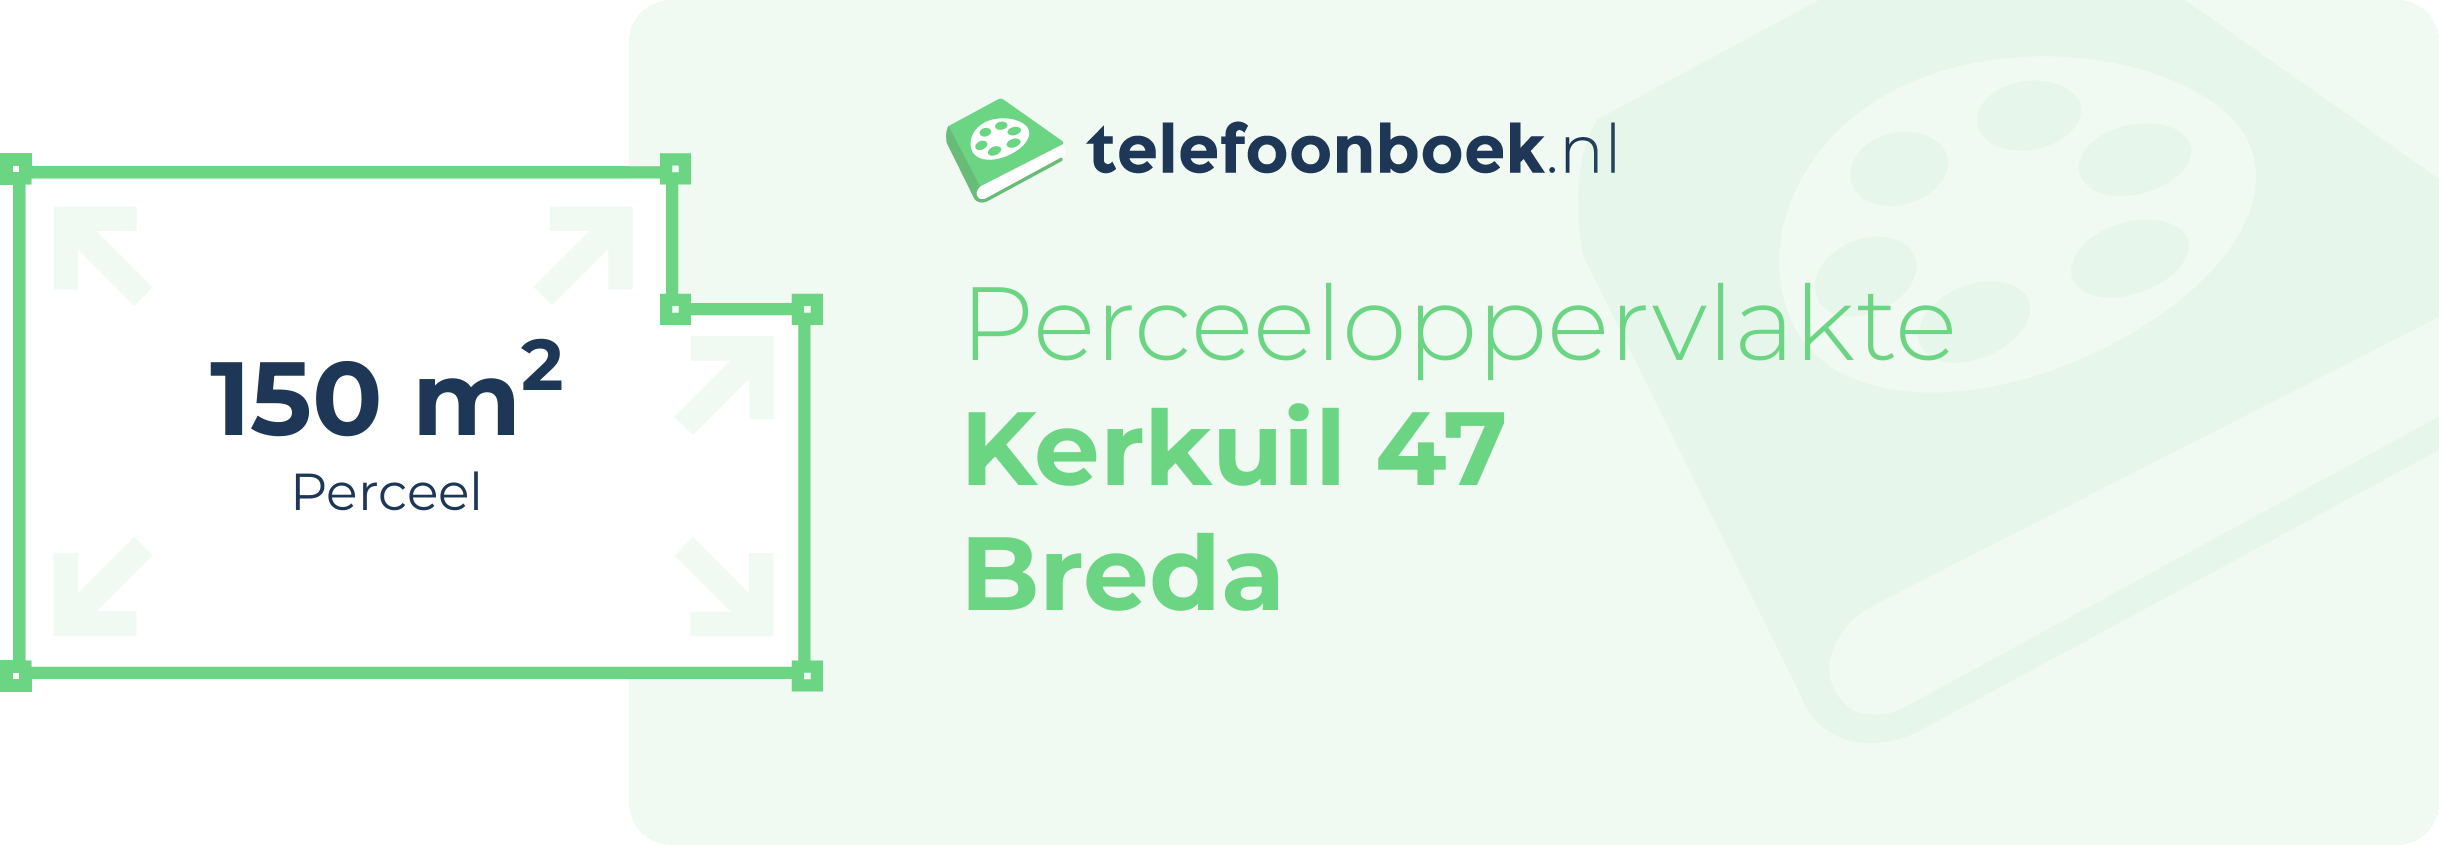 Perceeloppervlakte Kerkuil 47 Breda